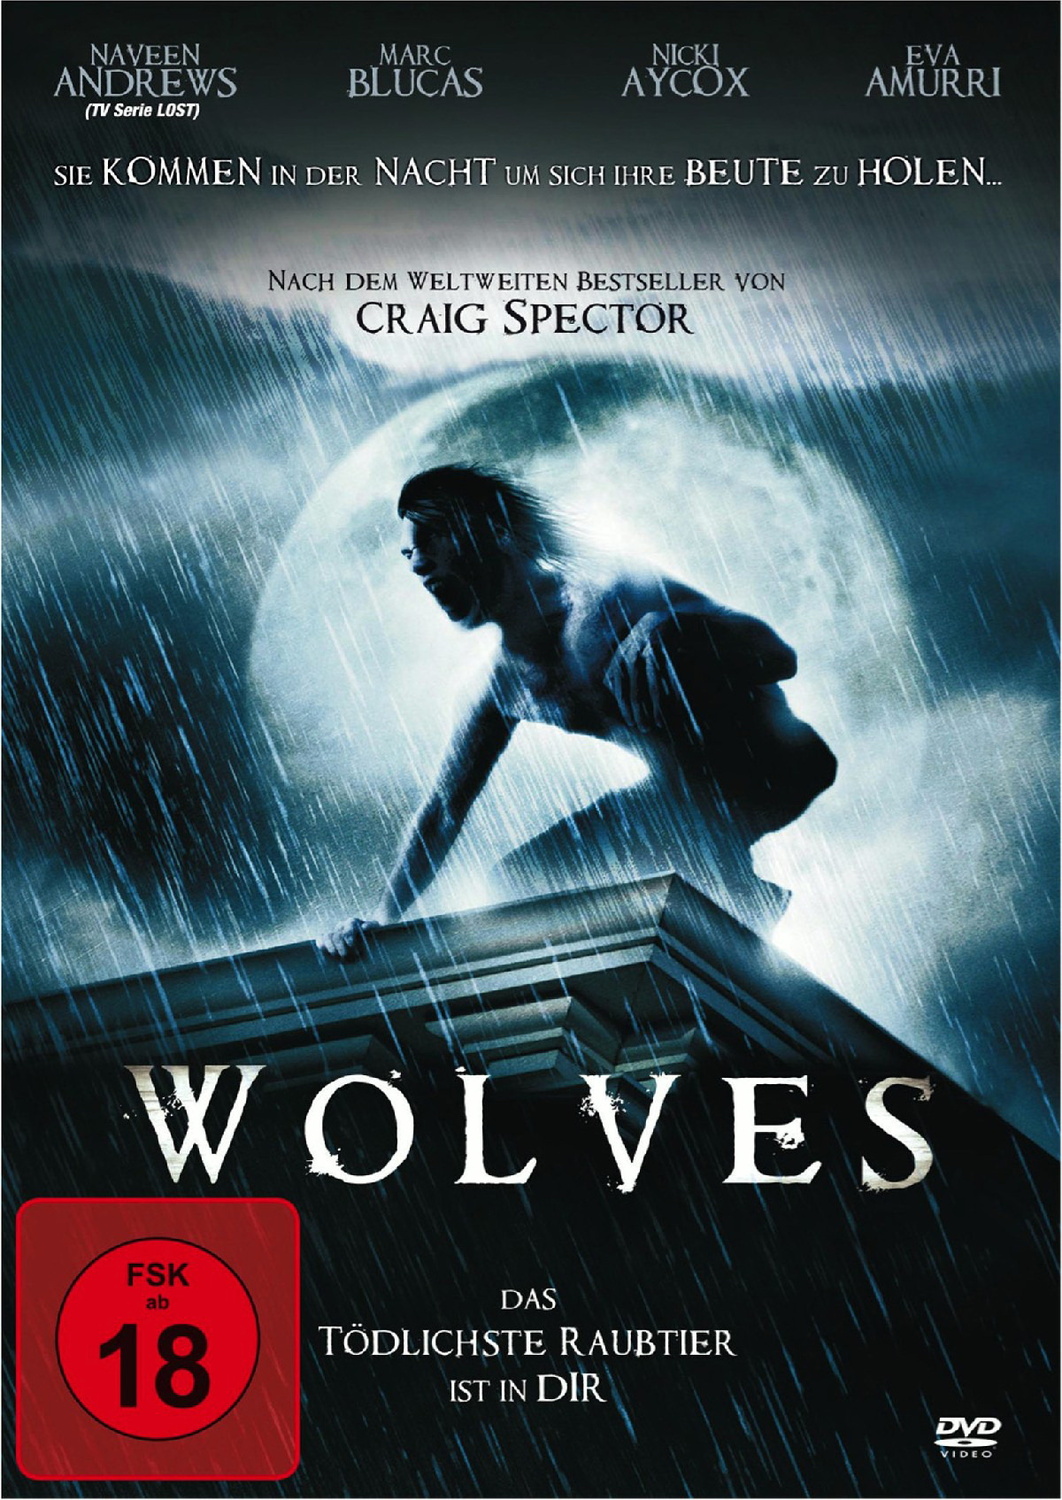 Wolves - Das tödlichste Raubtier ist in Dir! von Delta Music